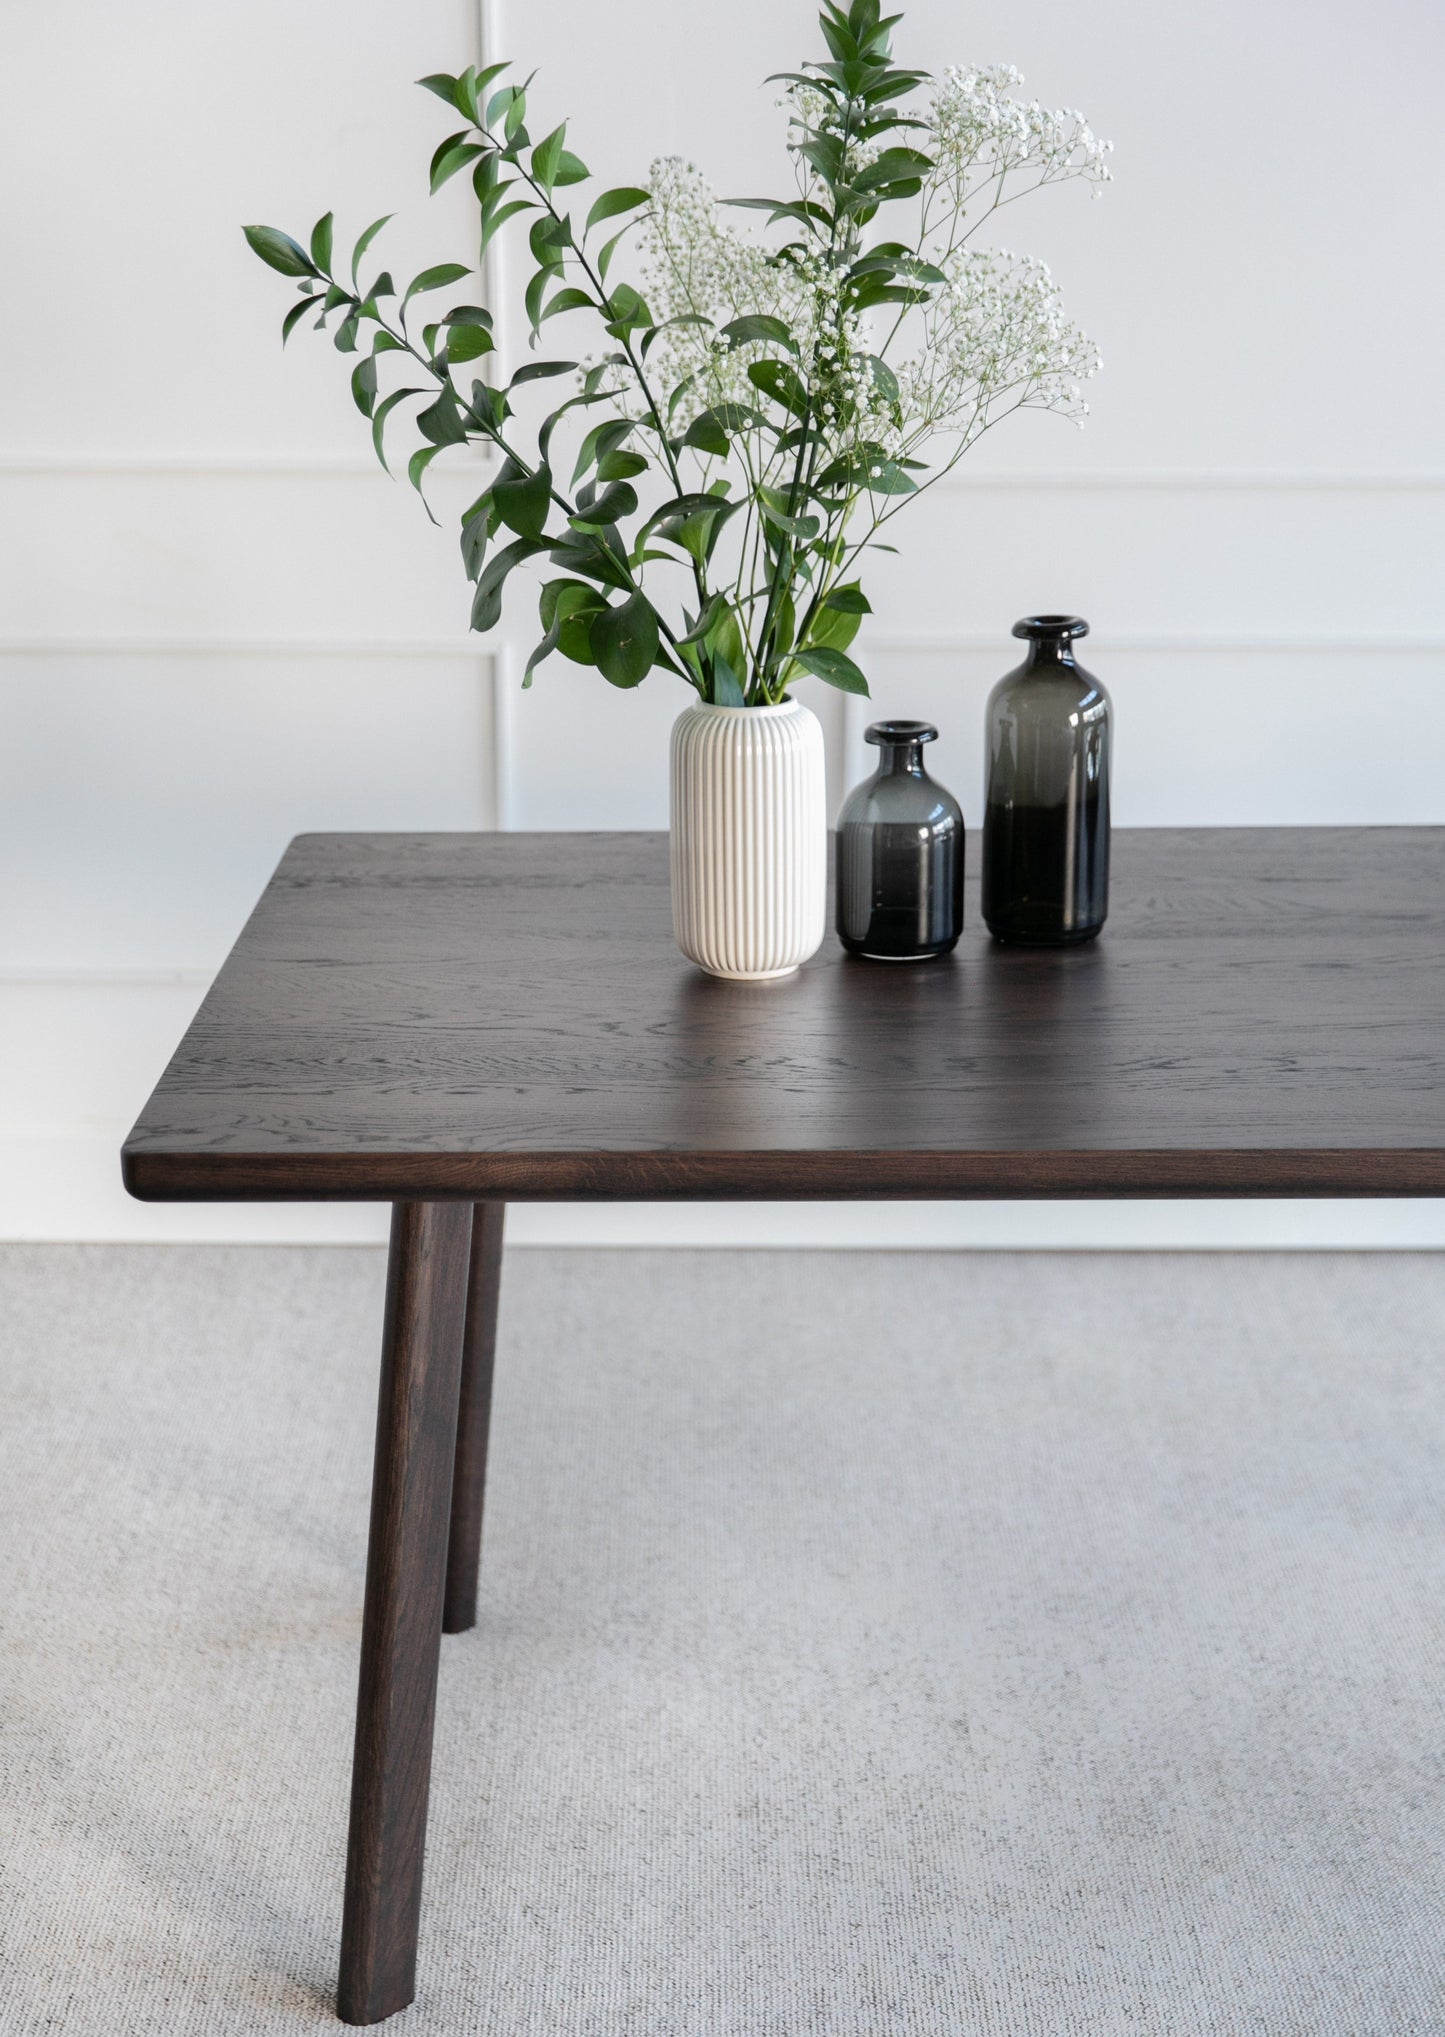 Spisebordet Hamar skiller seg ut med sitt klassiske og minimalistiske design. Med godt vedlikehold vil dette spisebordet vare i generasjoner